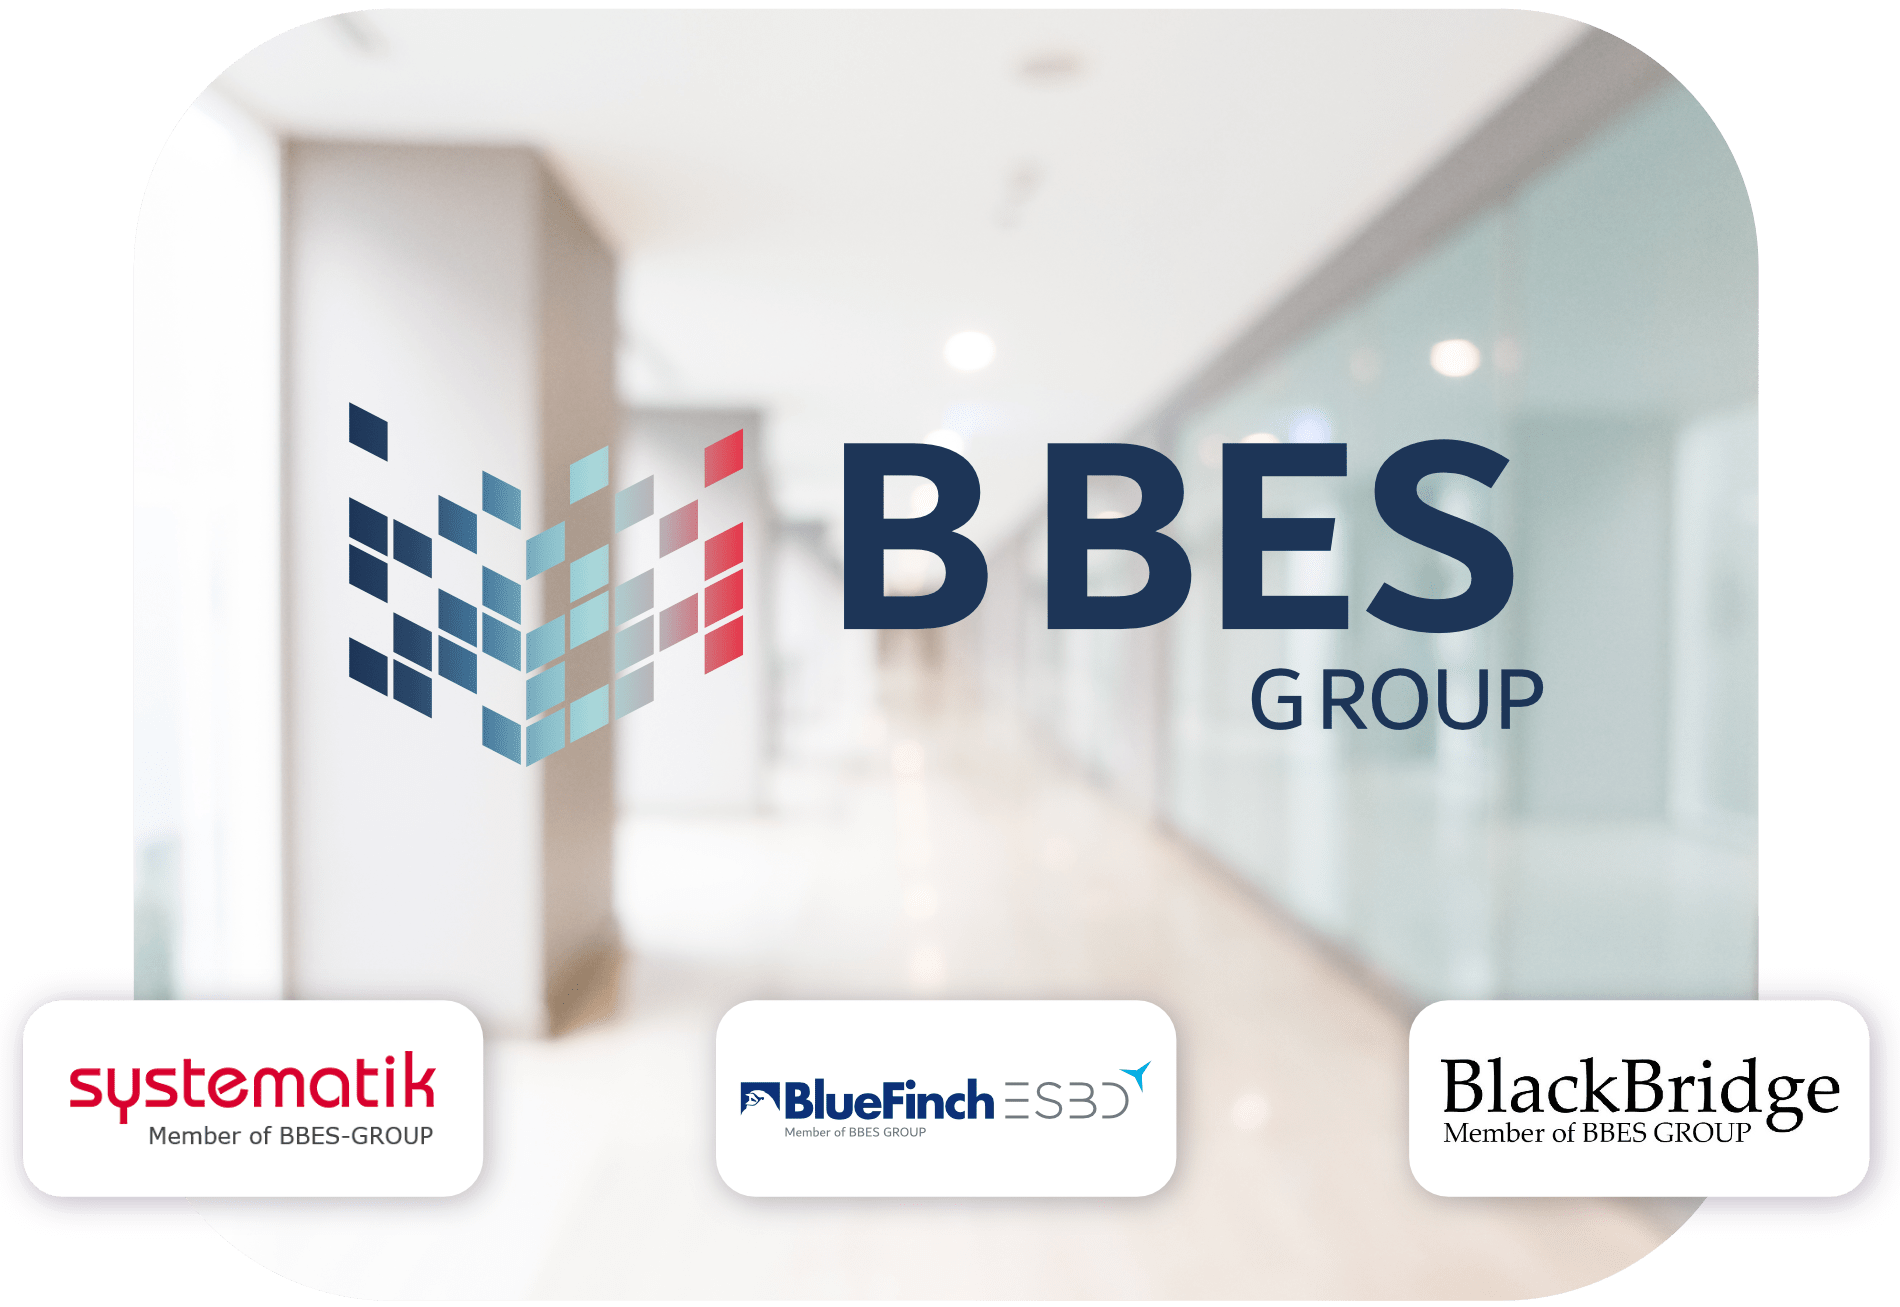 BlueFinch-ESBD - bluefinch-esbd,bbes group